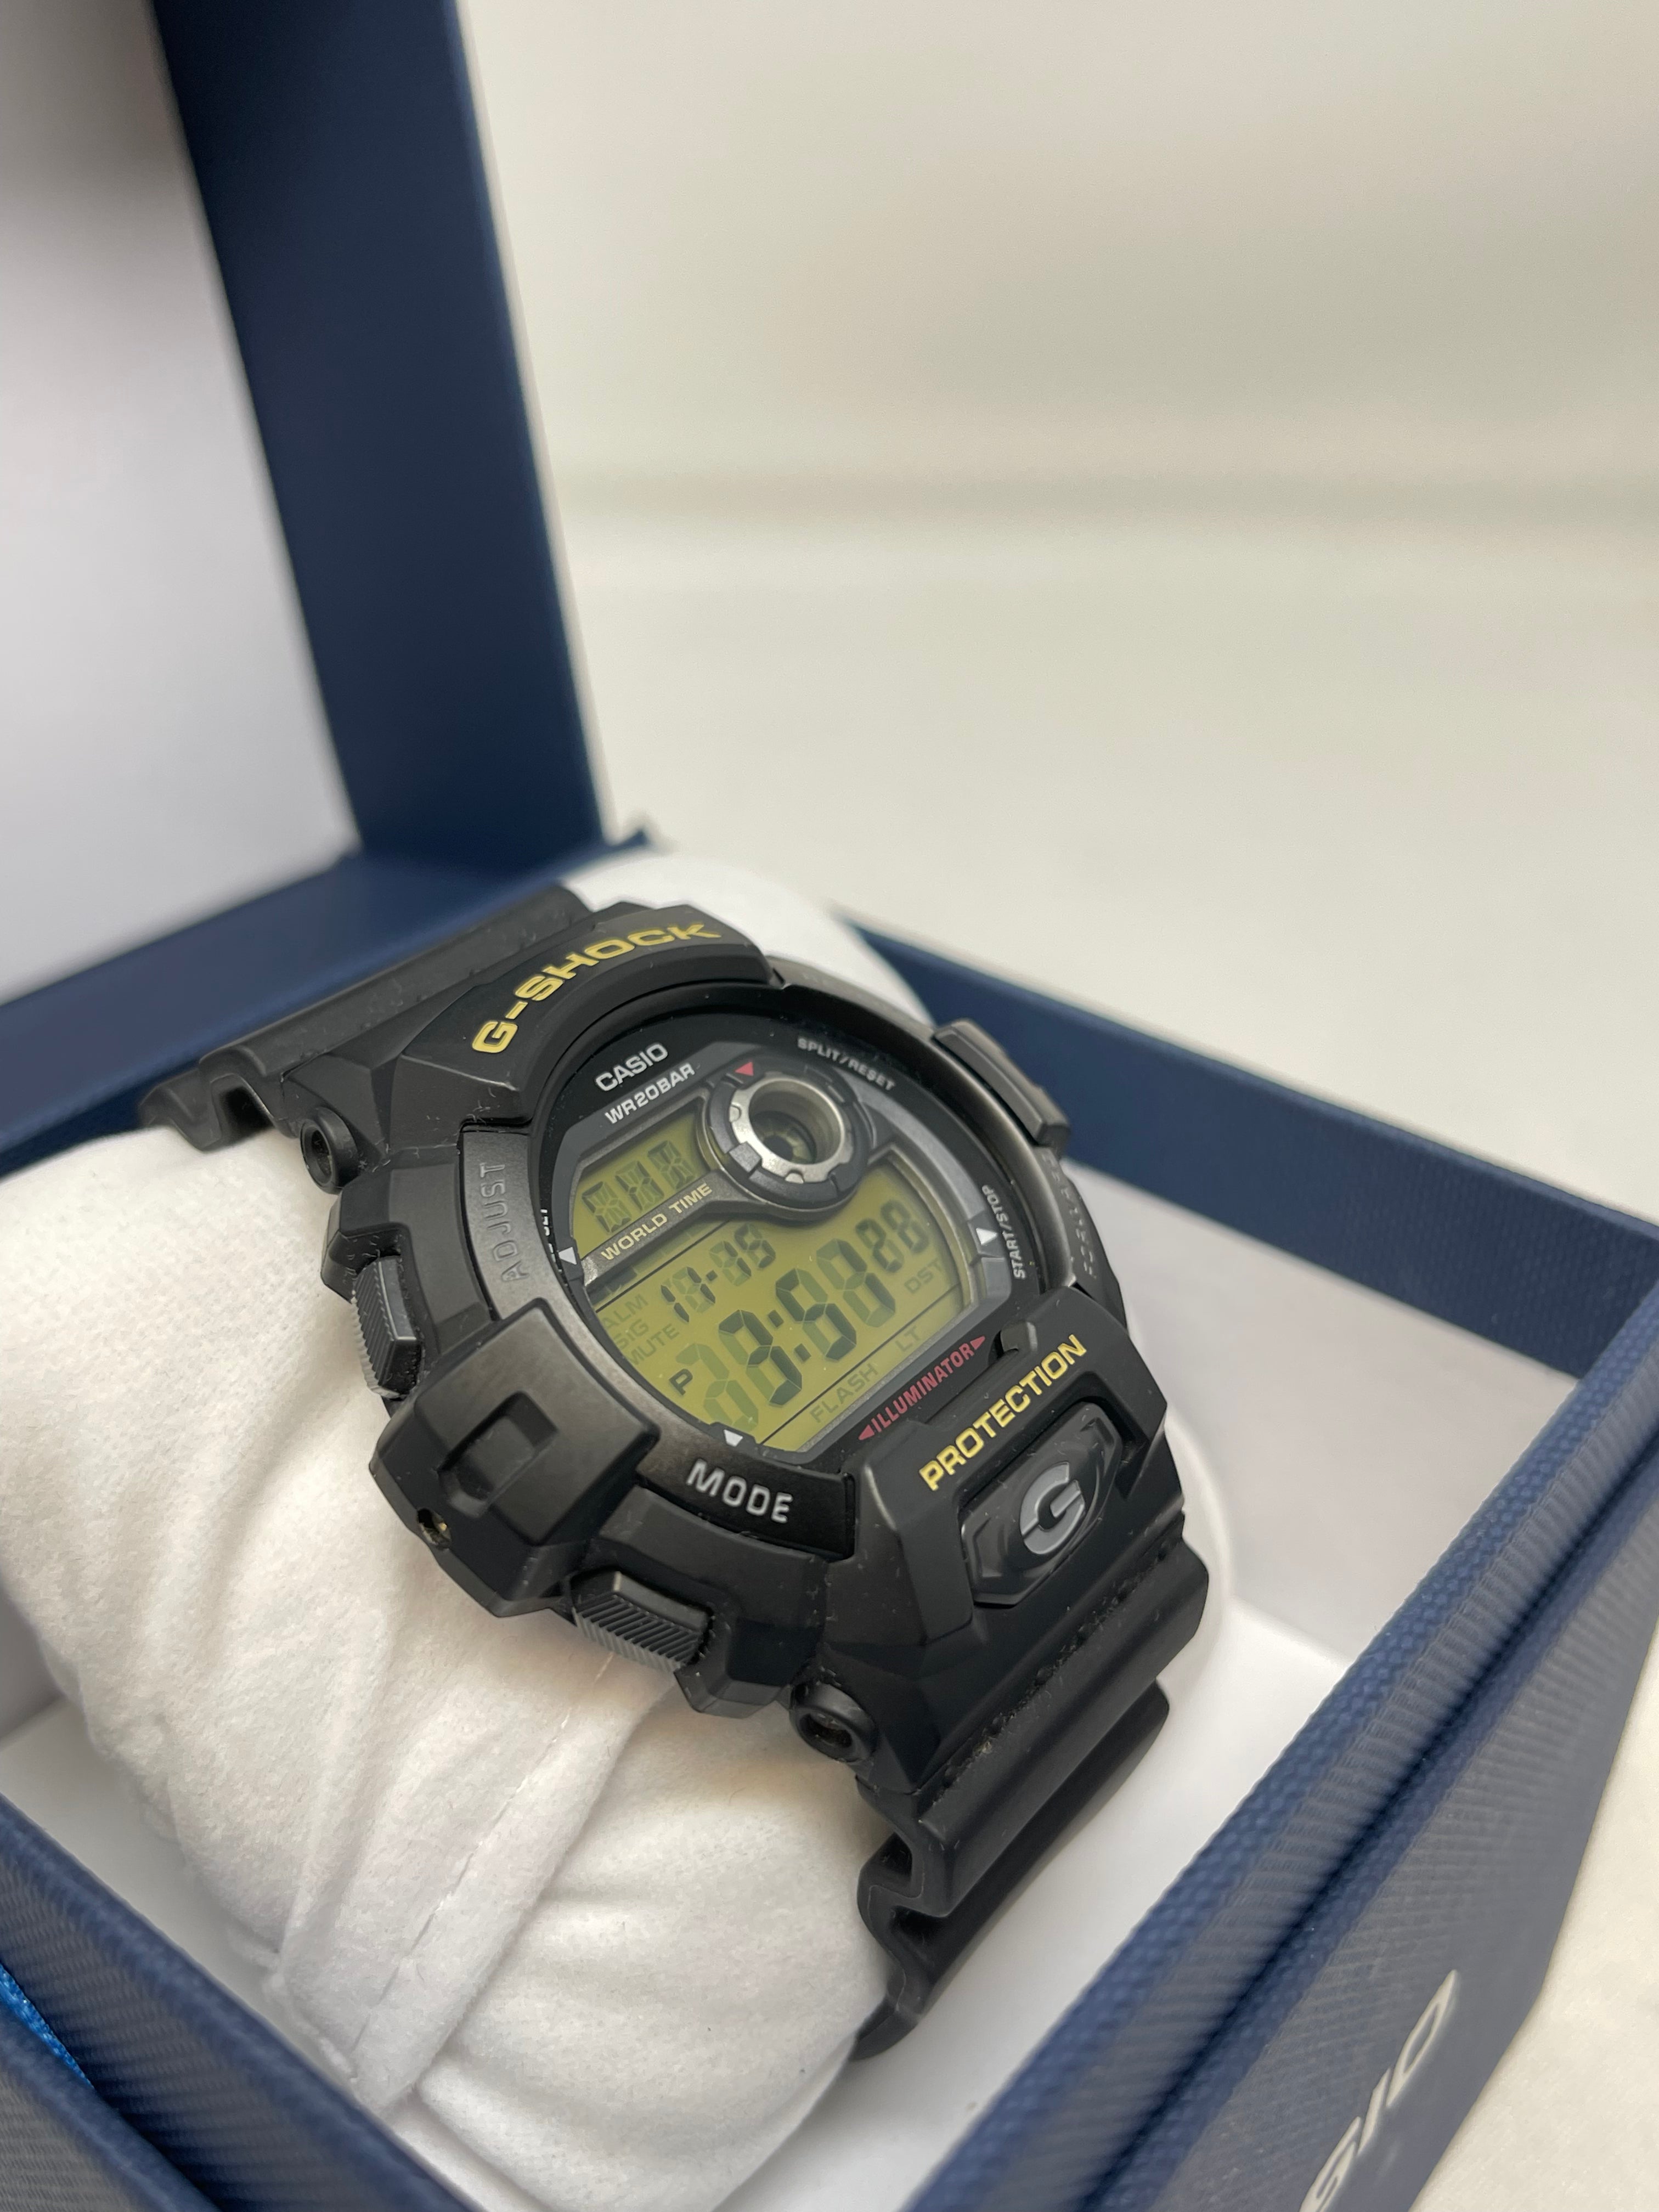 Casio G-Shock G8900-1 Digital Men's Watch